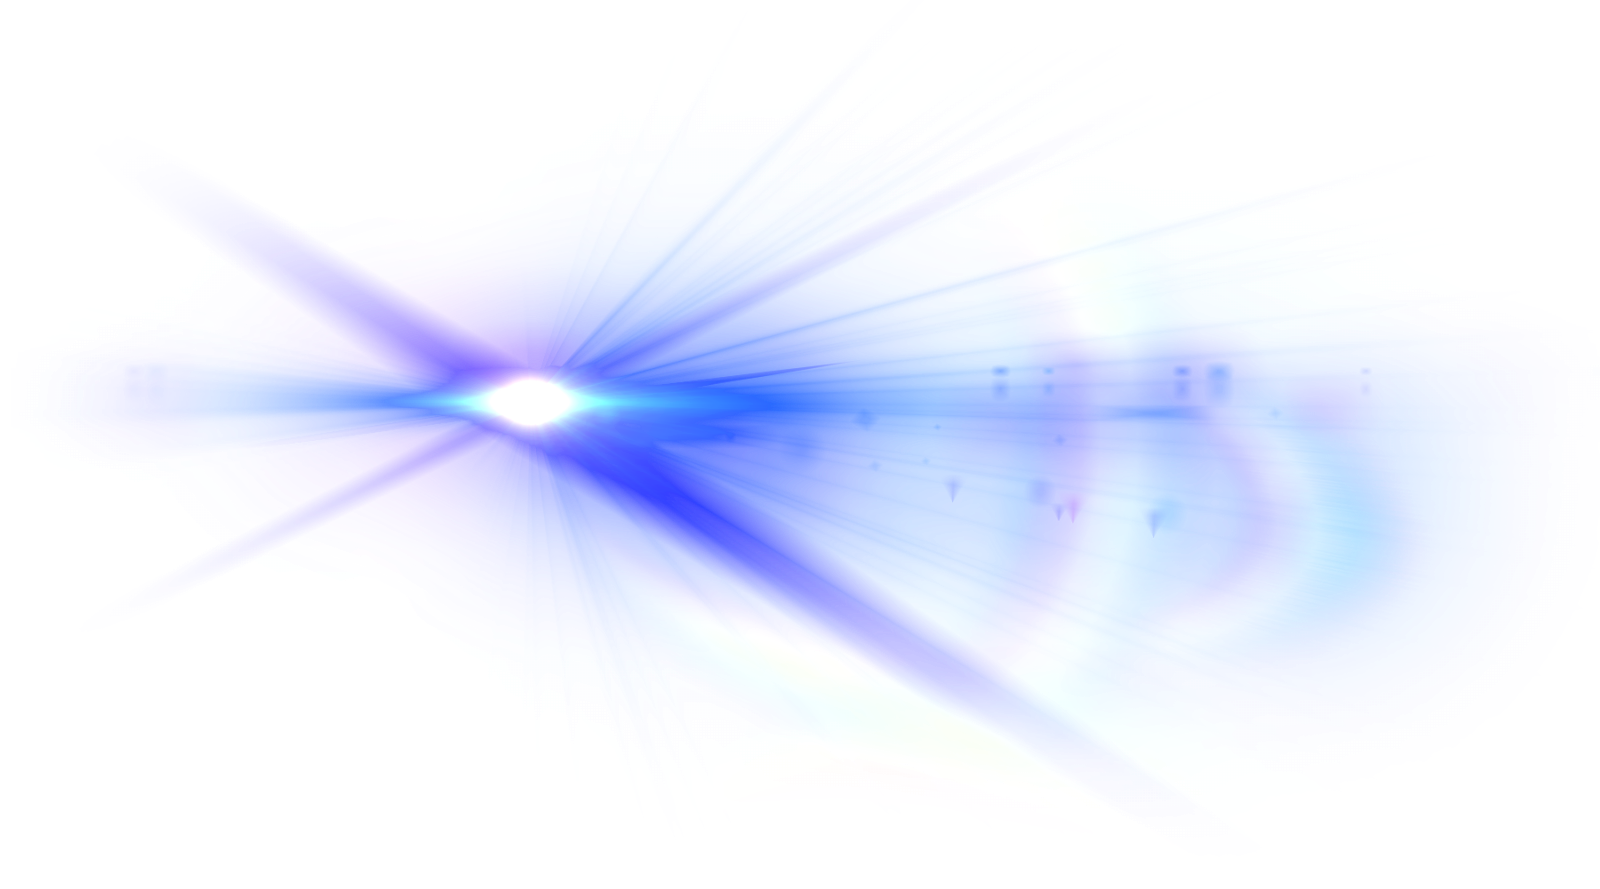 Imagens transparentes de flare óptico